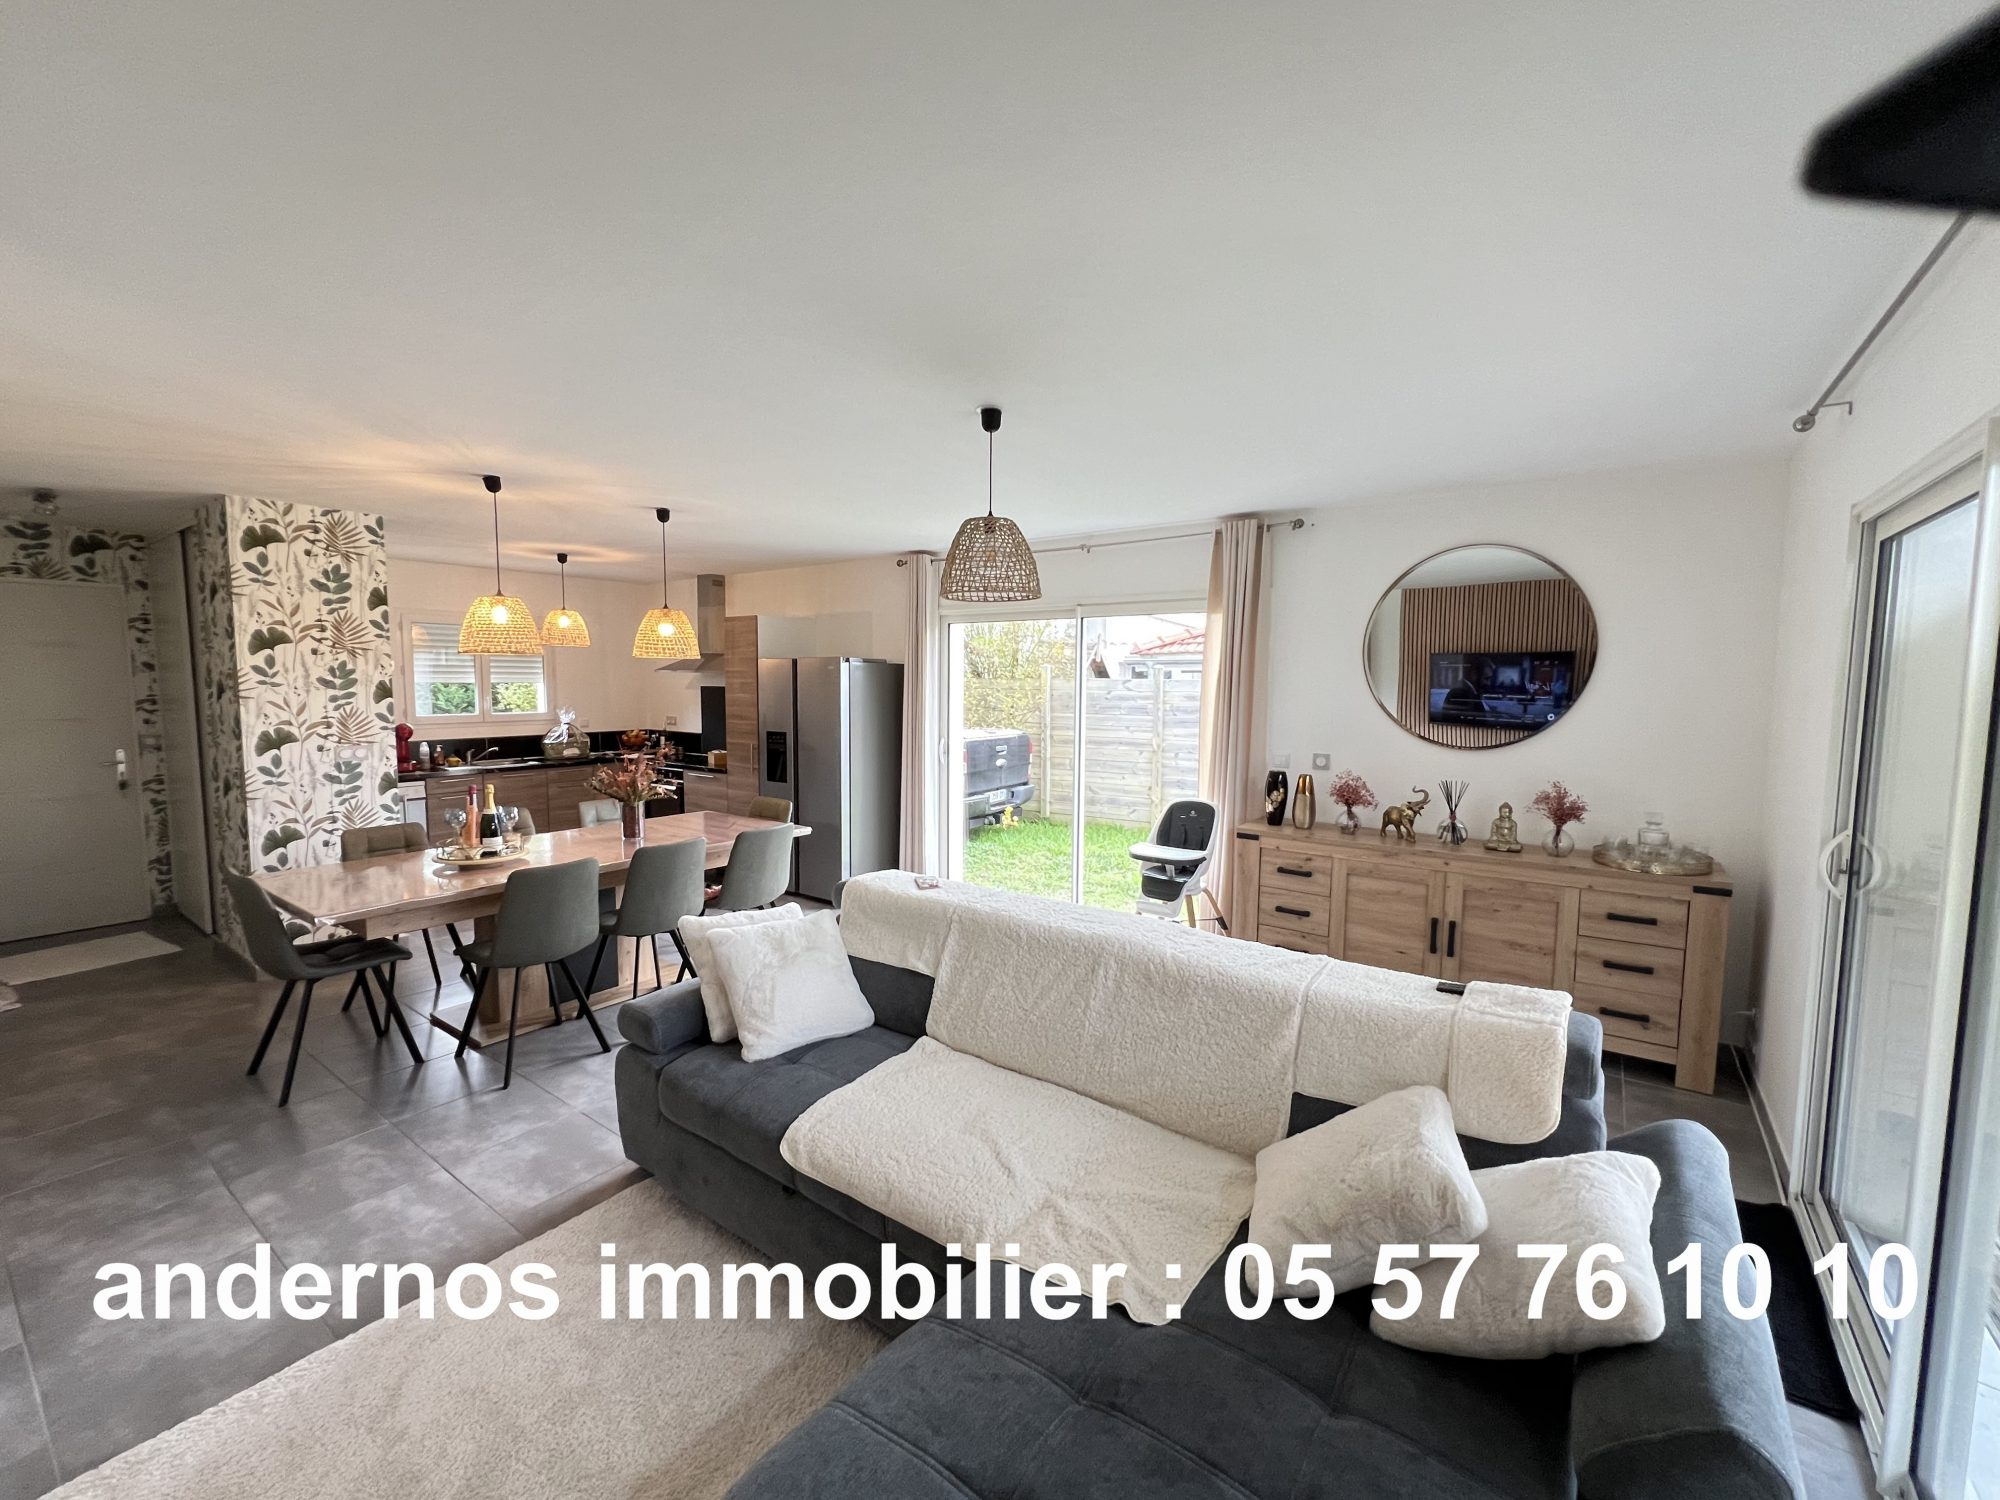 Vente Maison 90m² 4 Pièces à Andernos-les-Bains (33510) - Andernos Immobilier